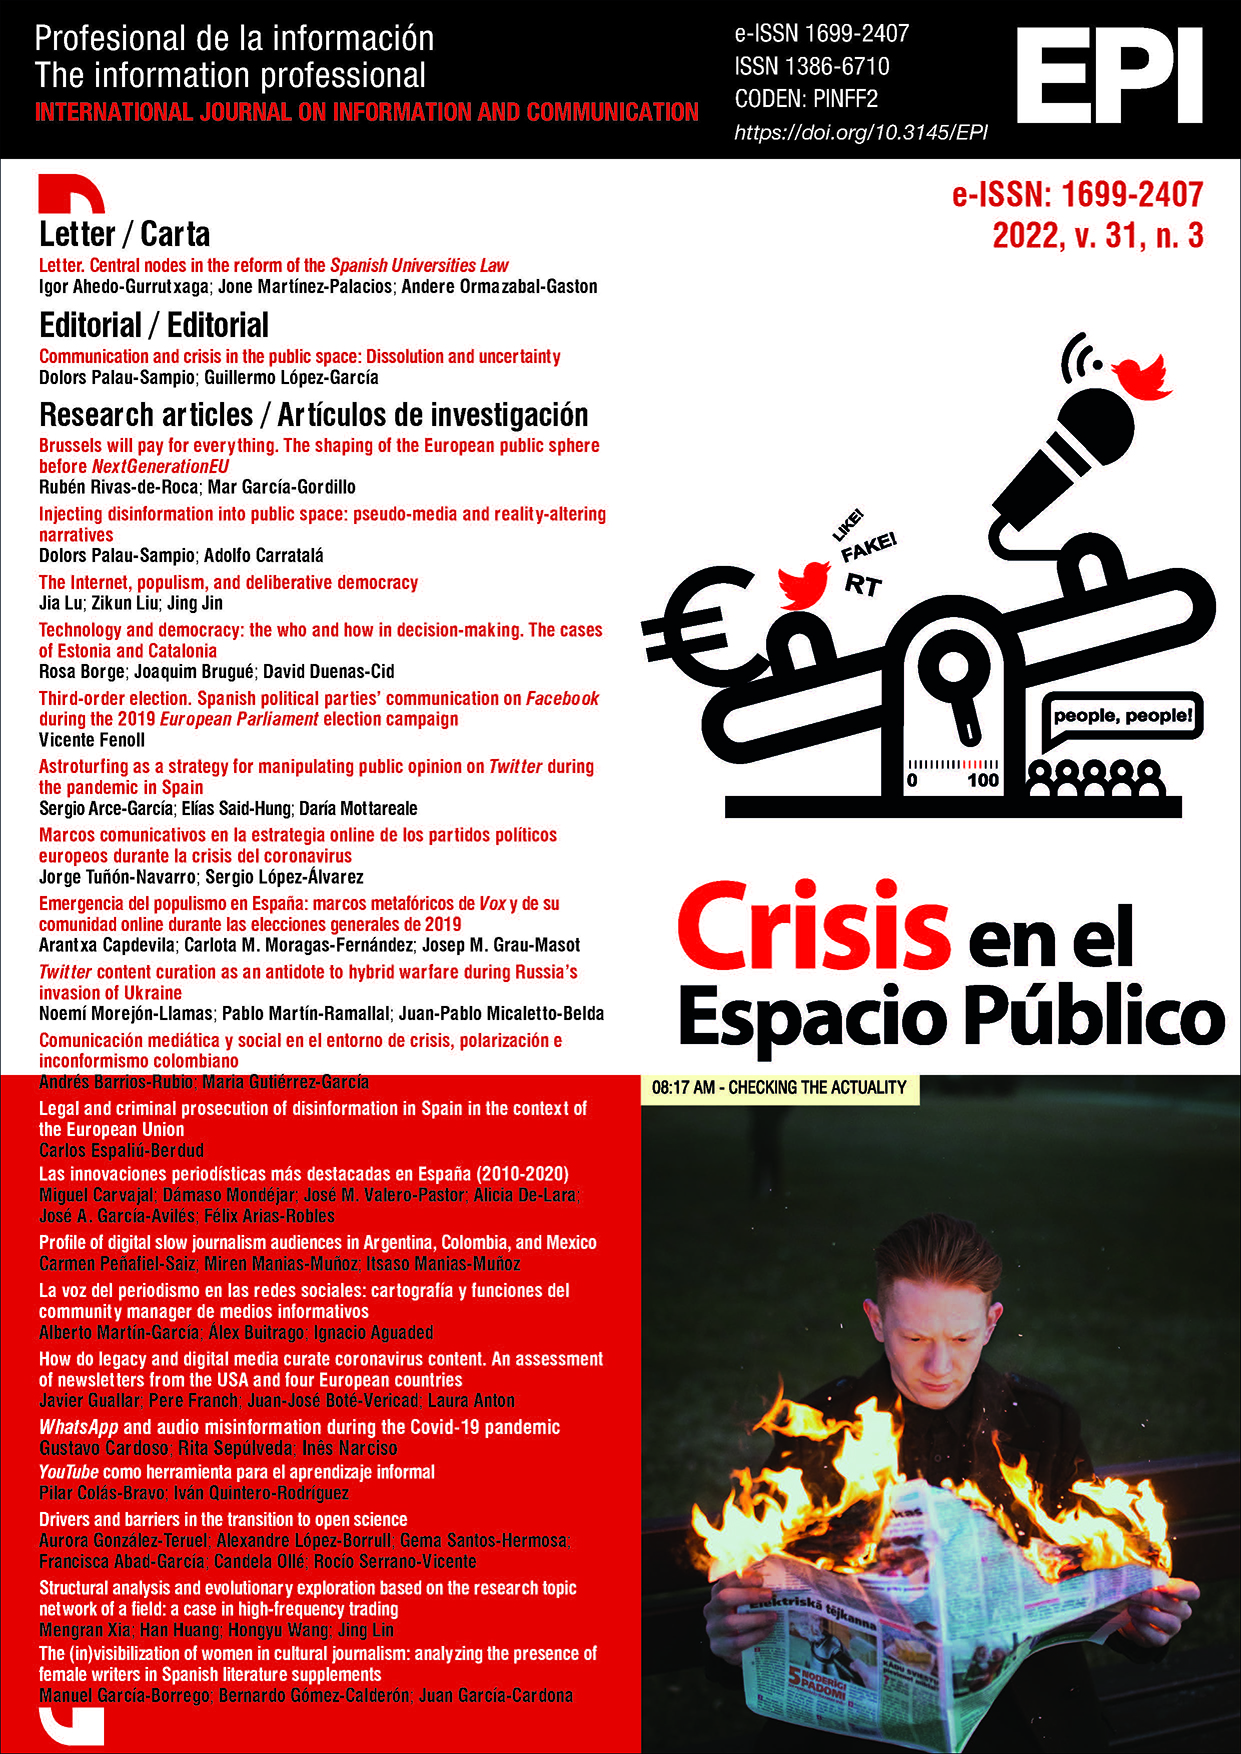 					Ver Vol. 31 Núm. 3 (2022): Crisis en el espacio público 
				